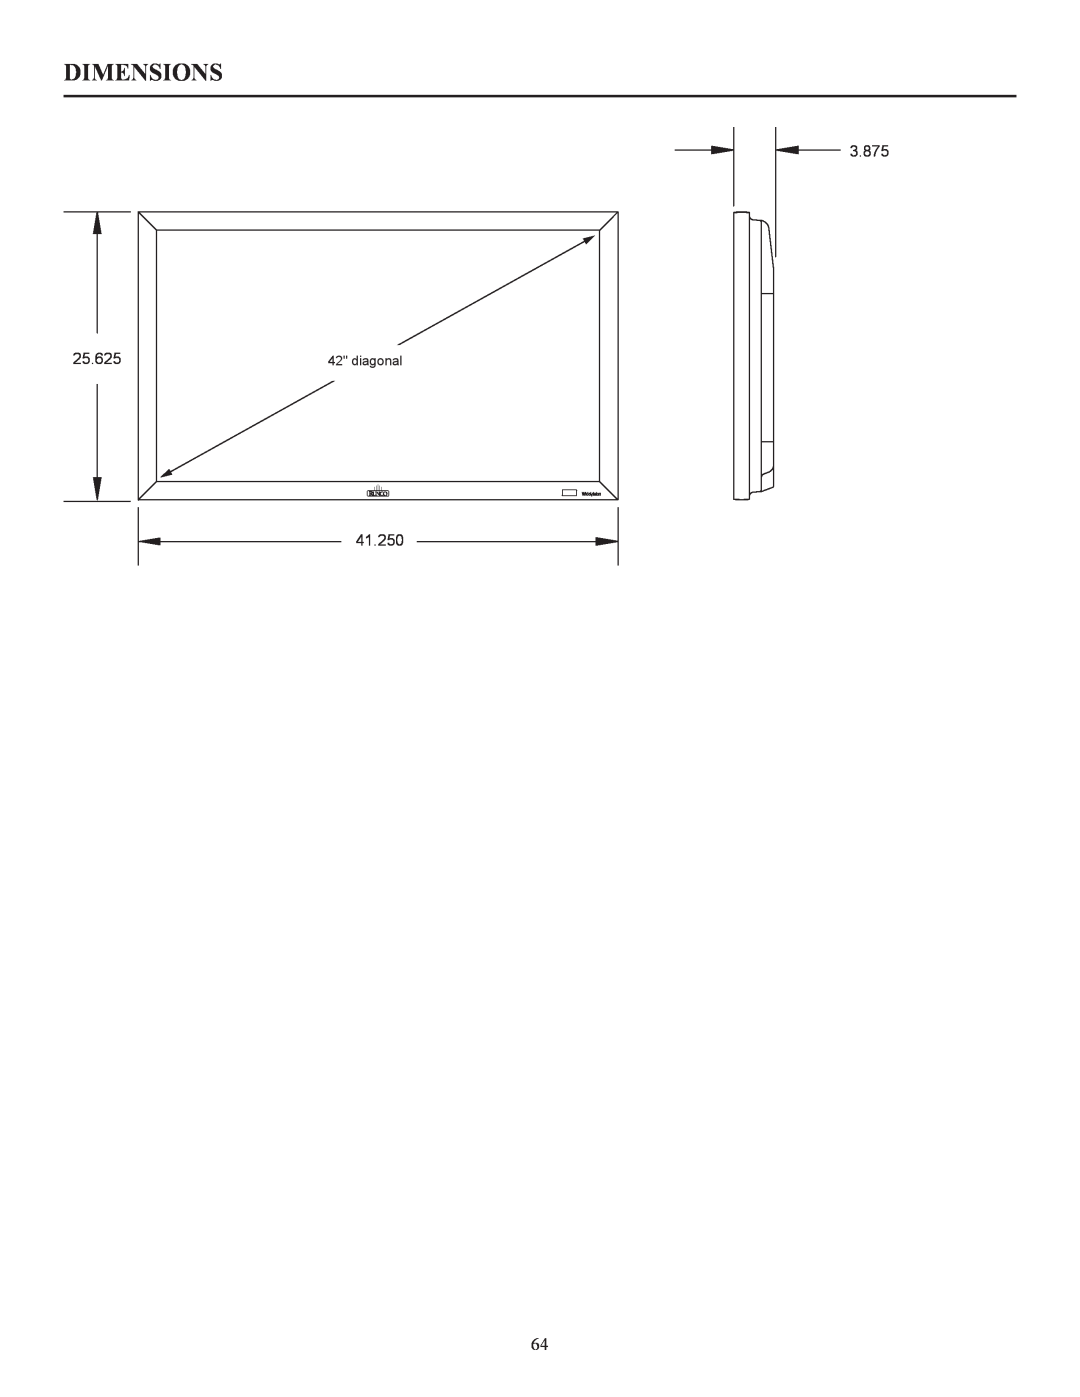 Runco CW-42i manual Dimensions, 3.875, 41.250, diagonal 